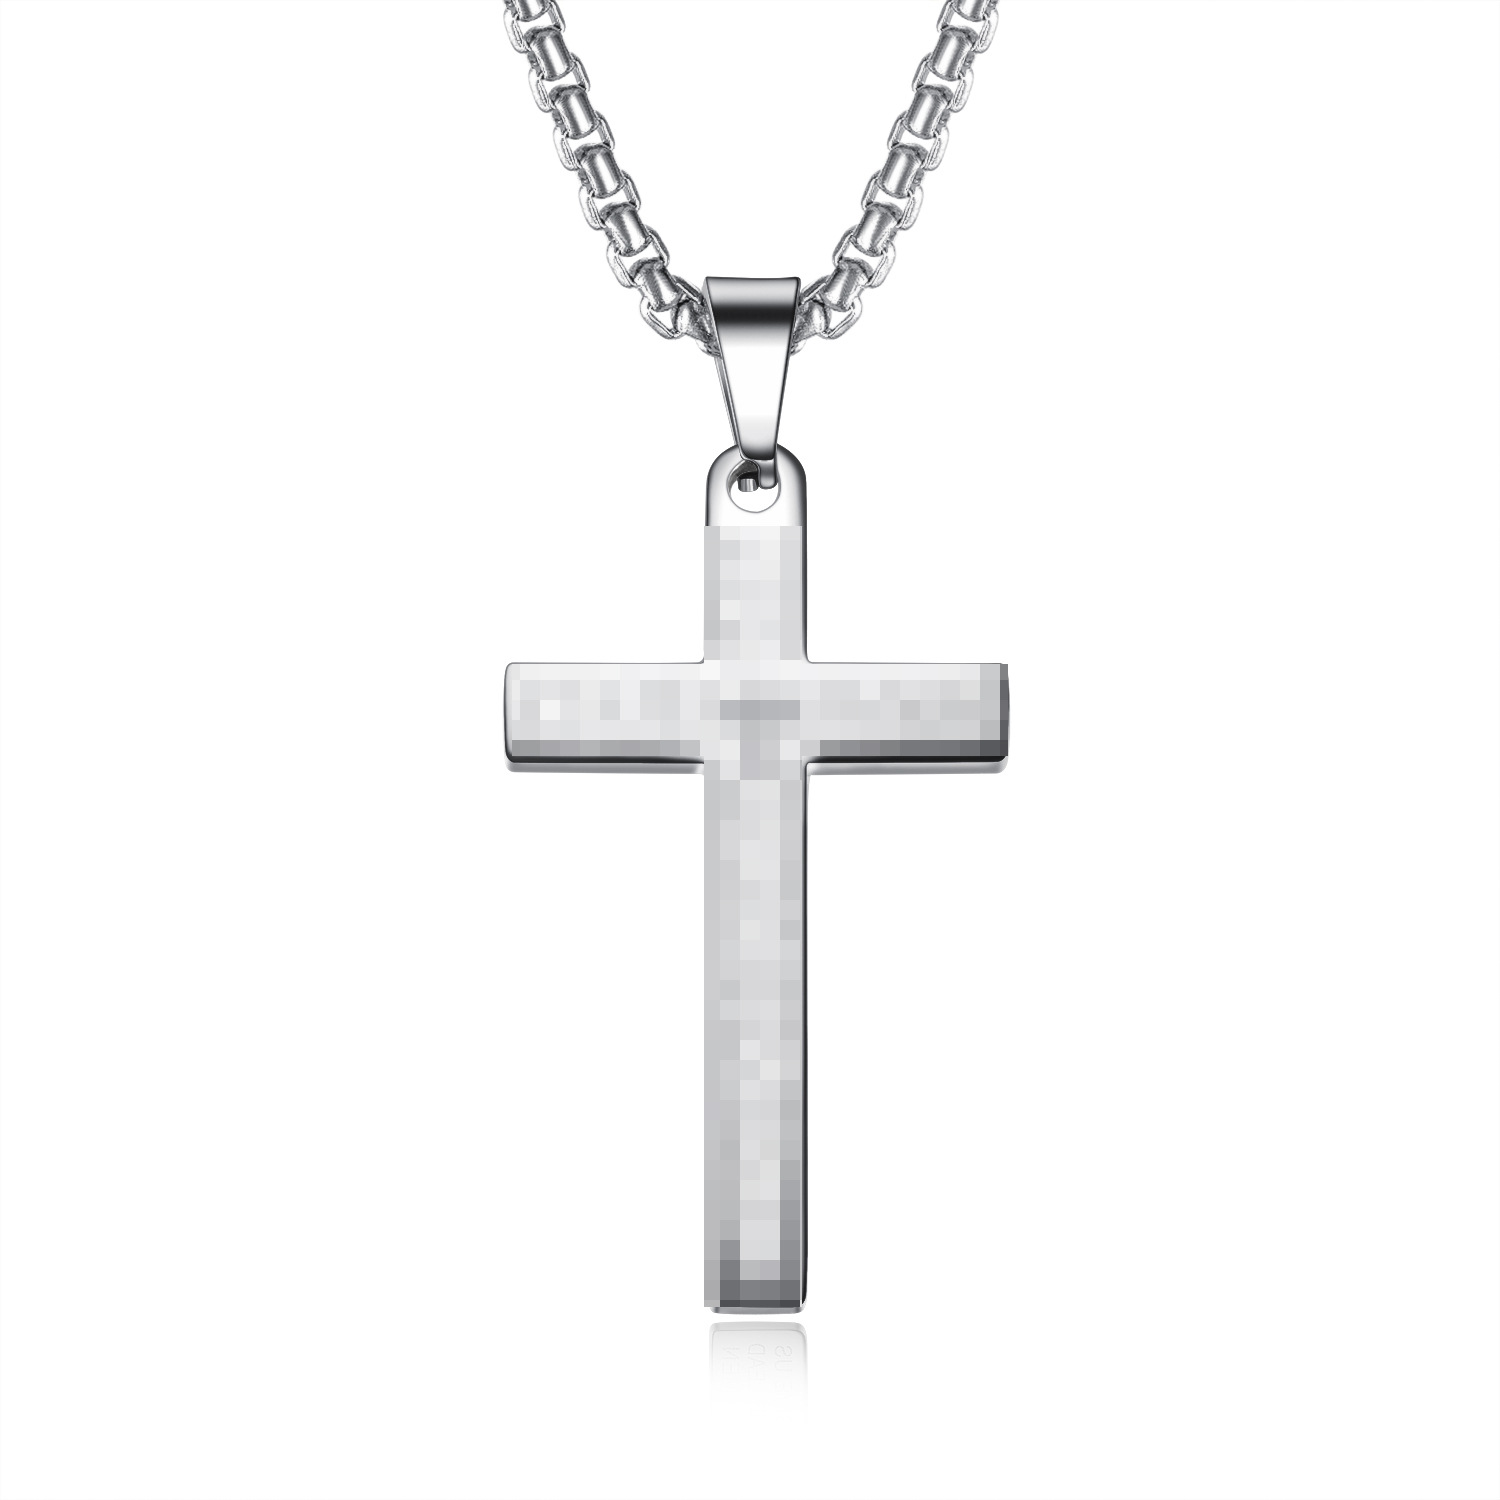 厂家直销欧美时尚复古经典十字架钛钢吊坠男街头嘻哈不锈钢项链